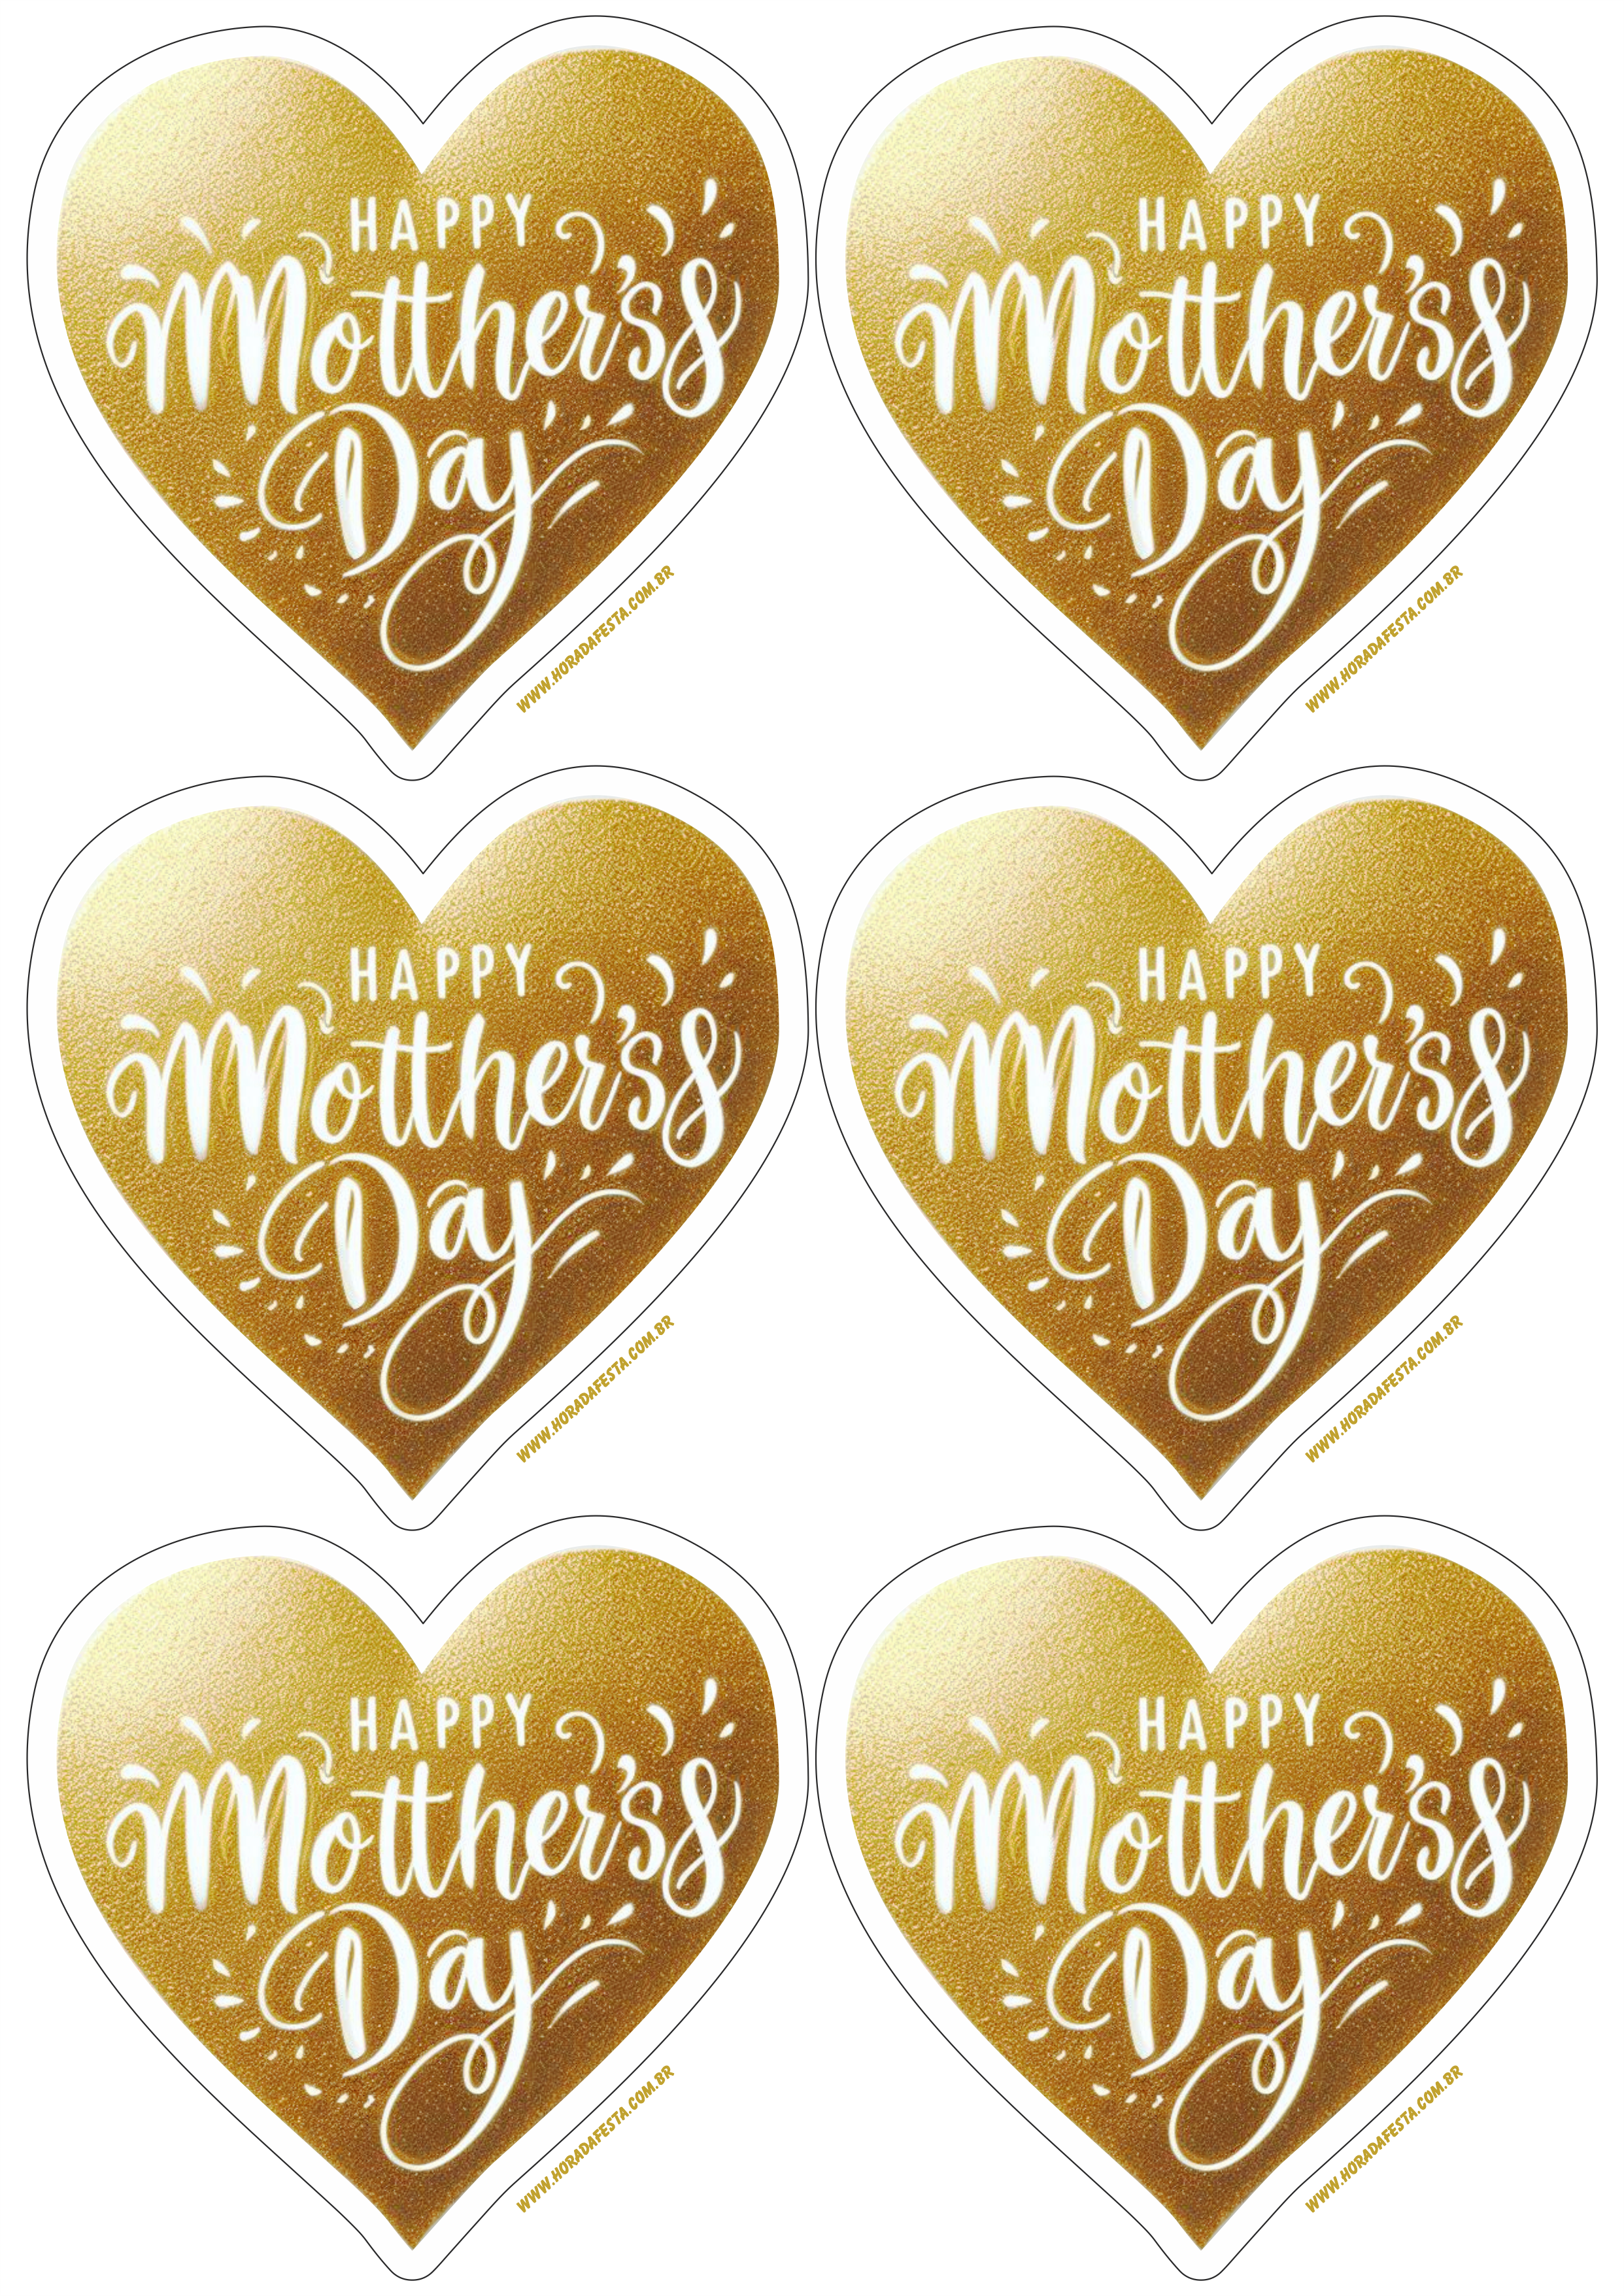 Feliz dia das mães adesivo de coração dourado para decoração happy mother’s day artes gráficas papelaria criativa 6 imagens png